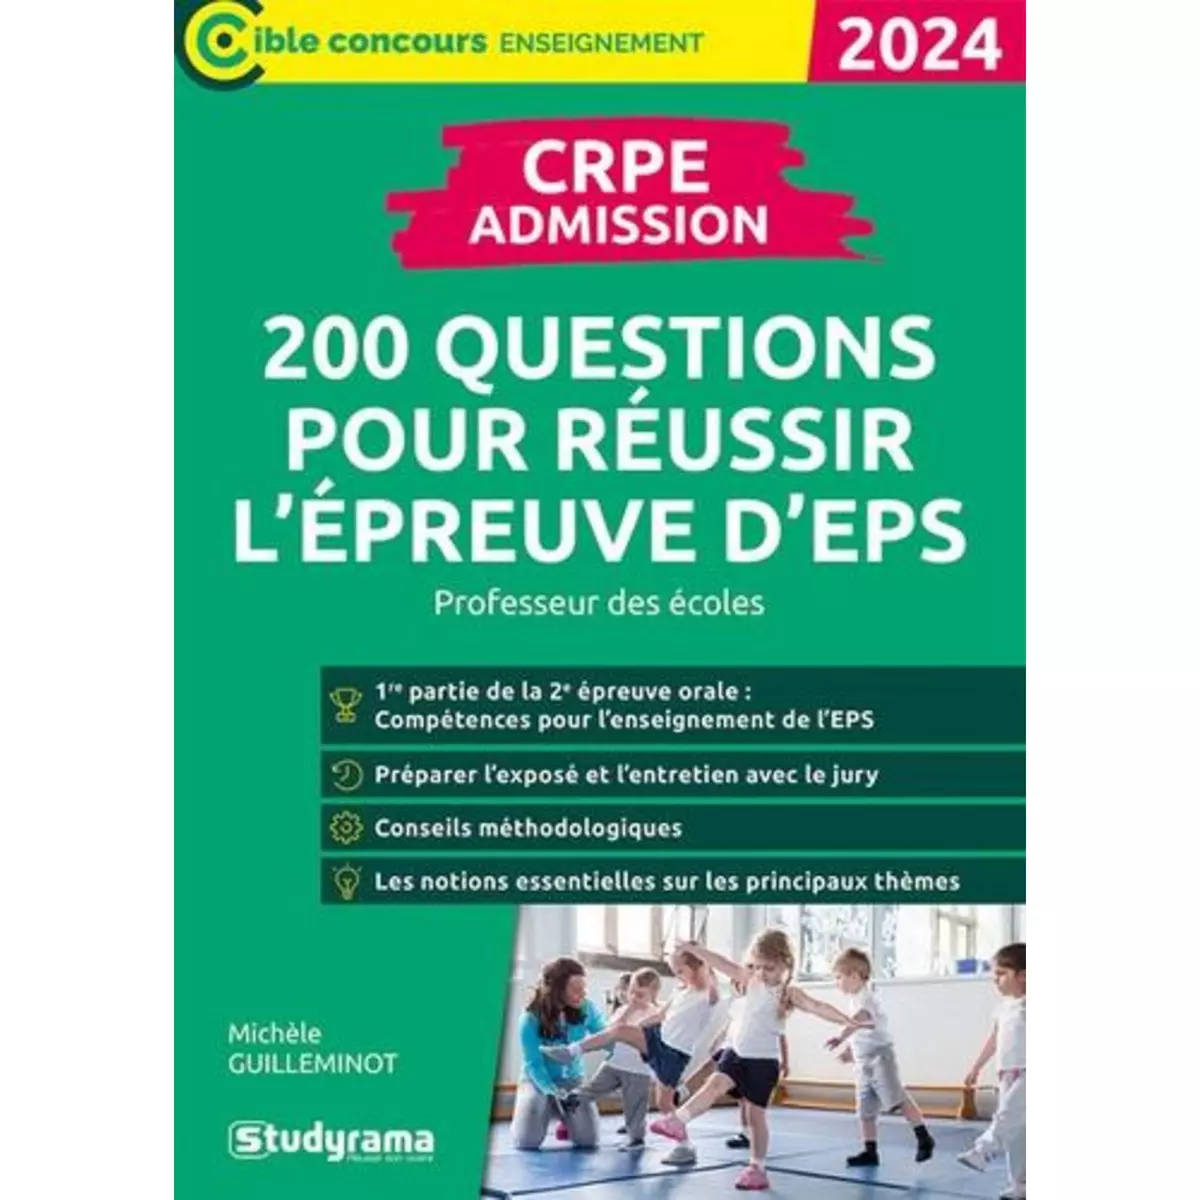  200 QUESTIONS POUR REUSSIR L'EPREUVE D'EPS. CRPE, EDITION 2024, Guilleminot Michèle